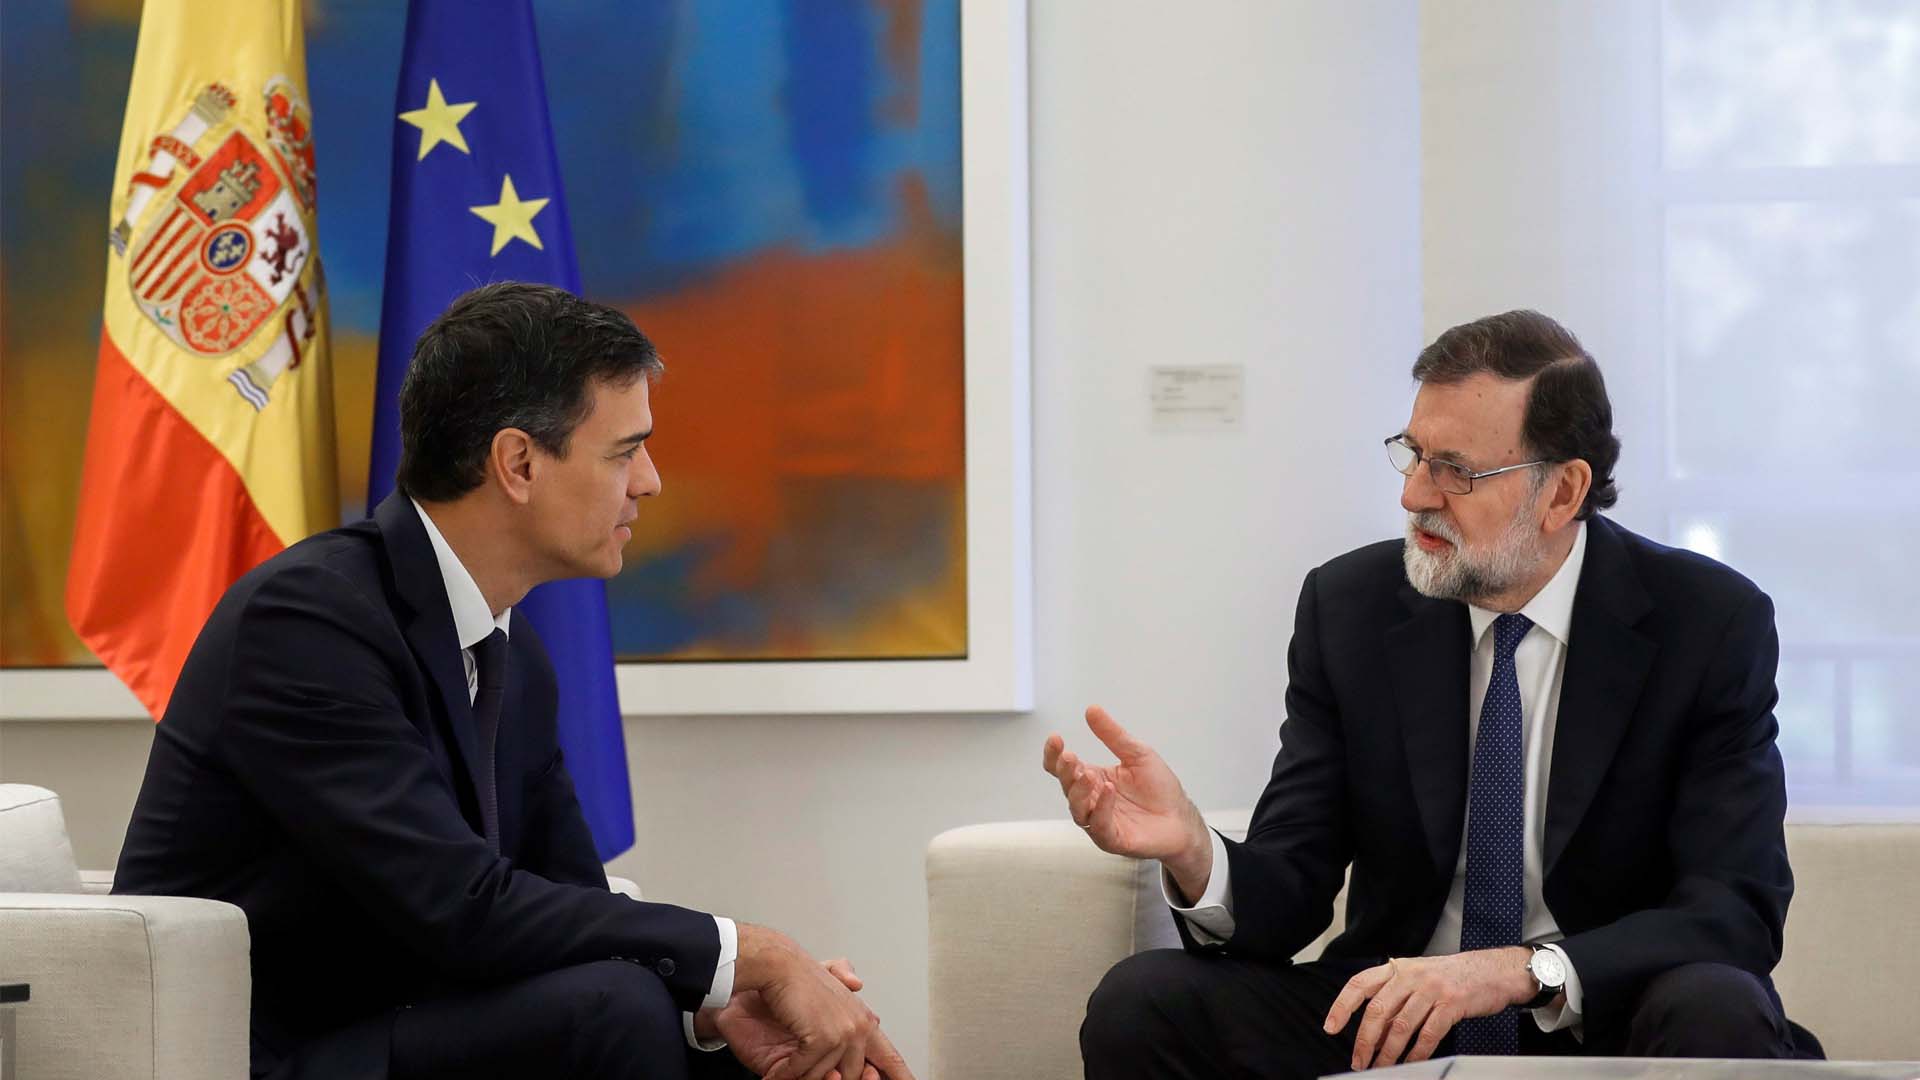 Rajoy y Sánchez acuerdan una respuesta pactada ante el discurso "xenófobo” de Quim Torra